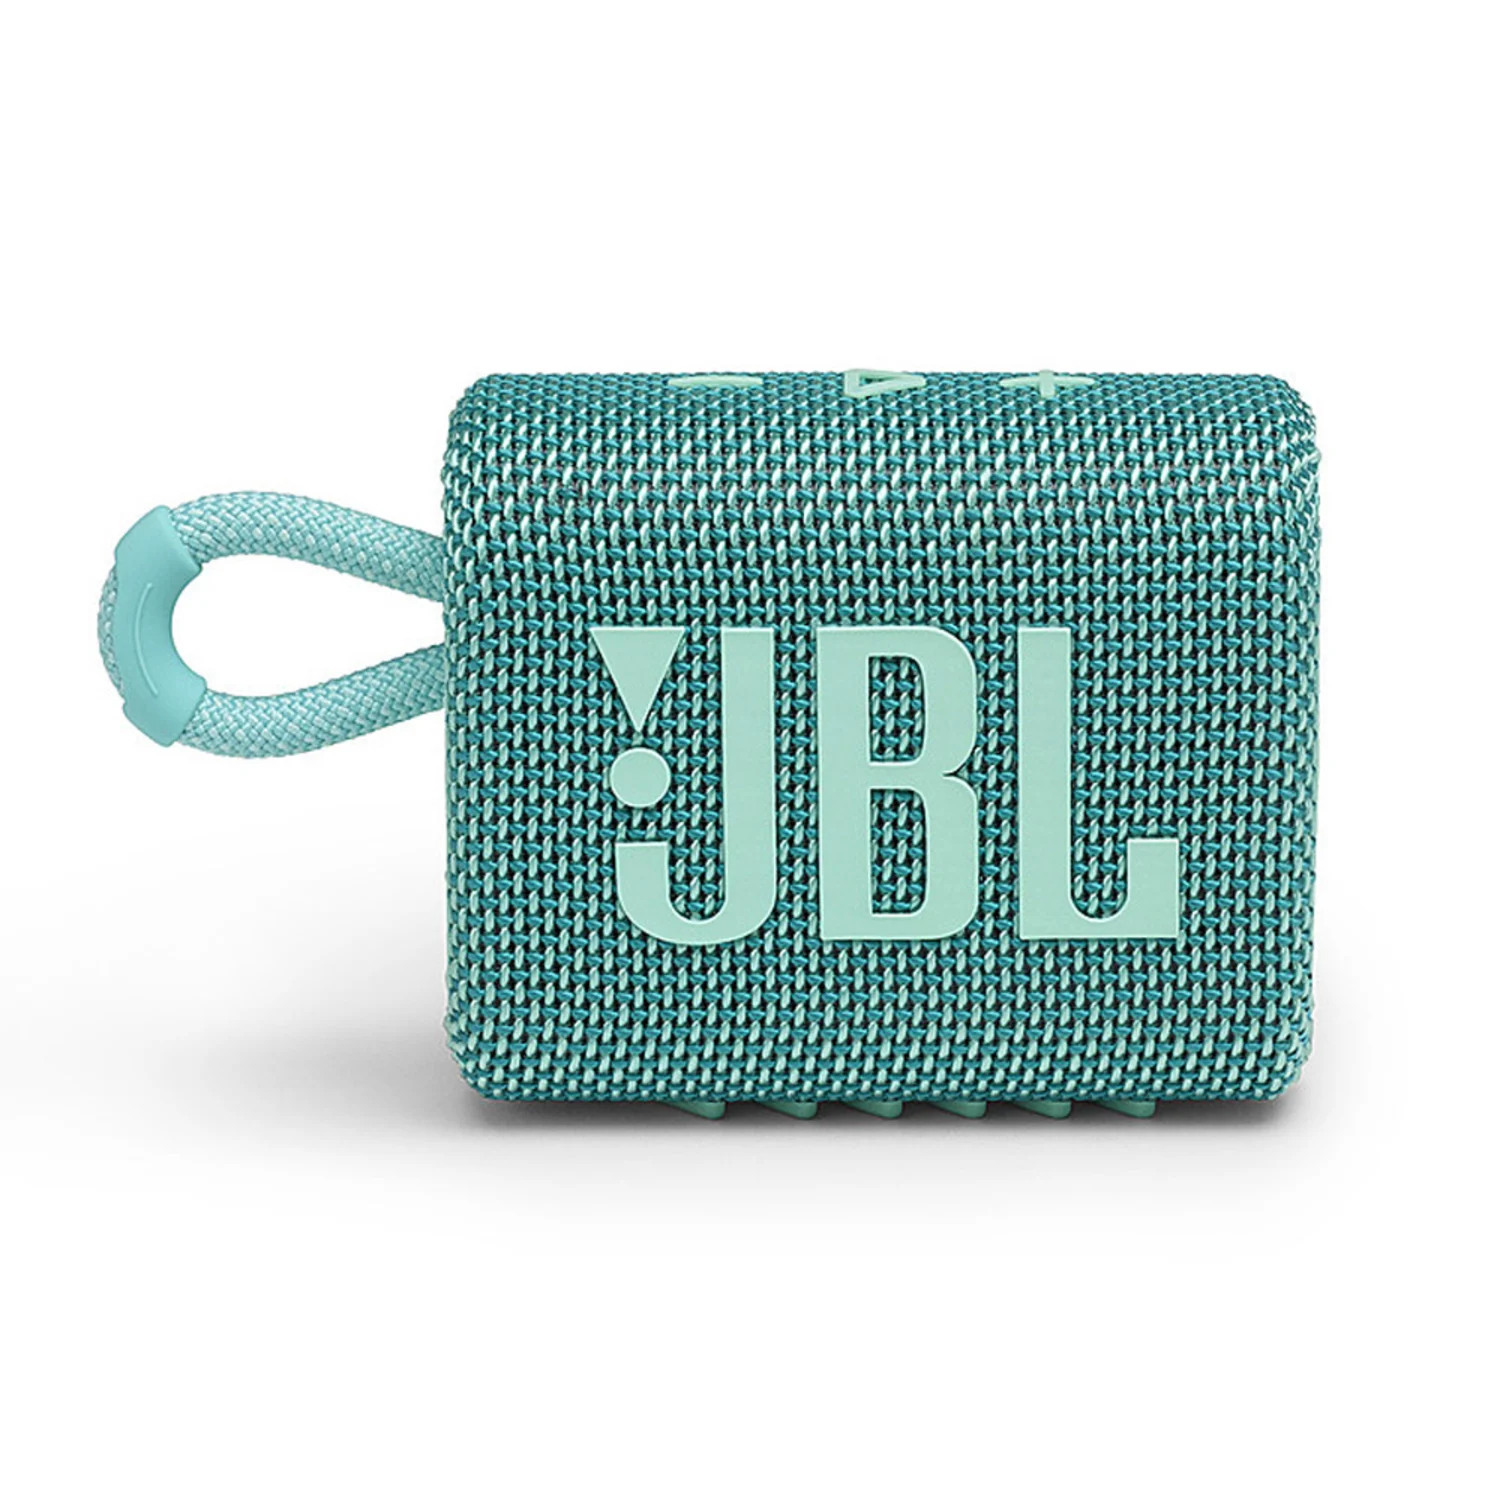 Caixa de som JBL GO 3 - Teal